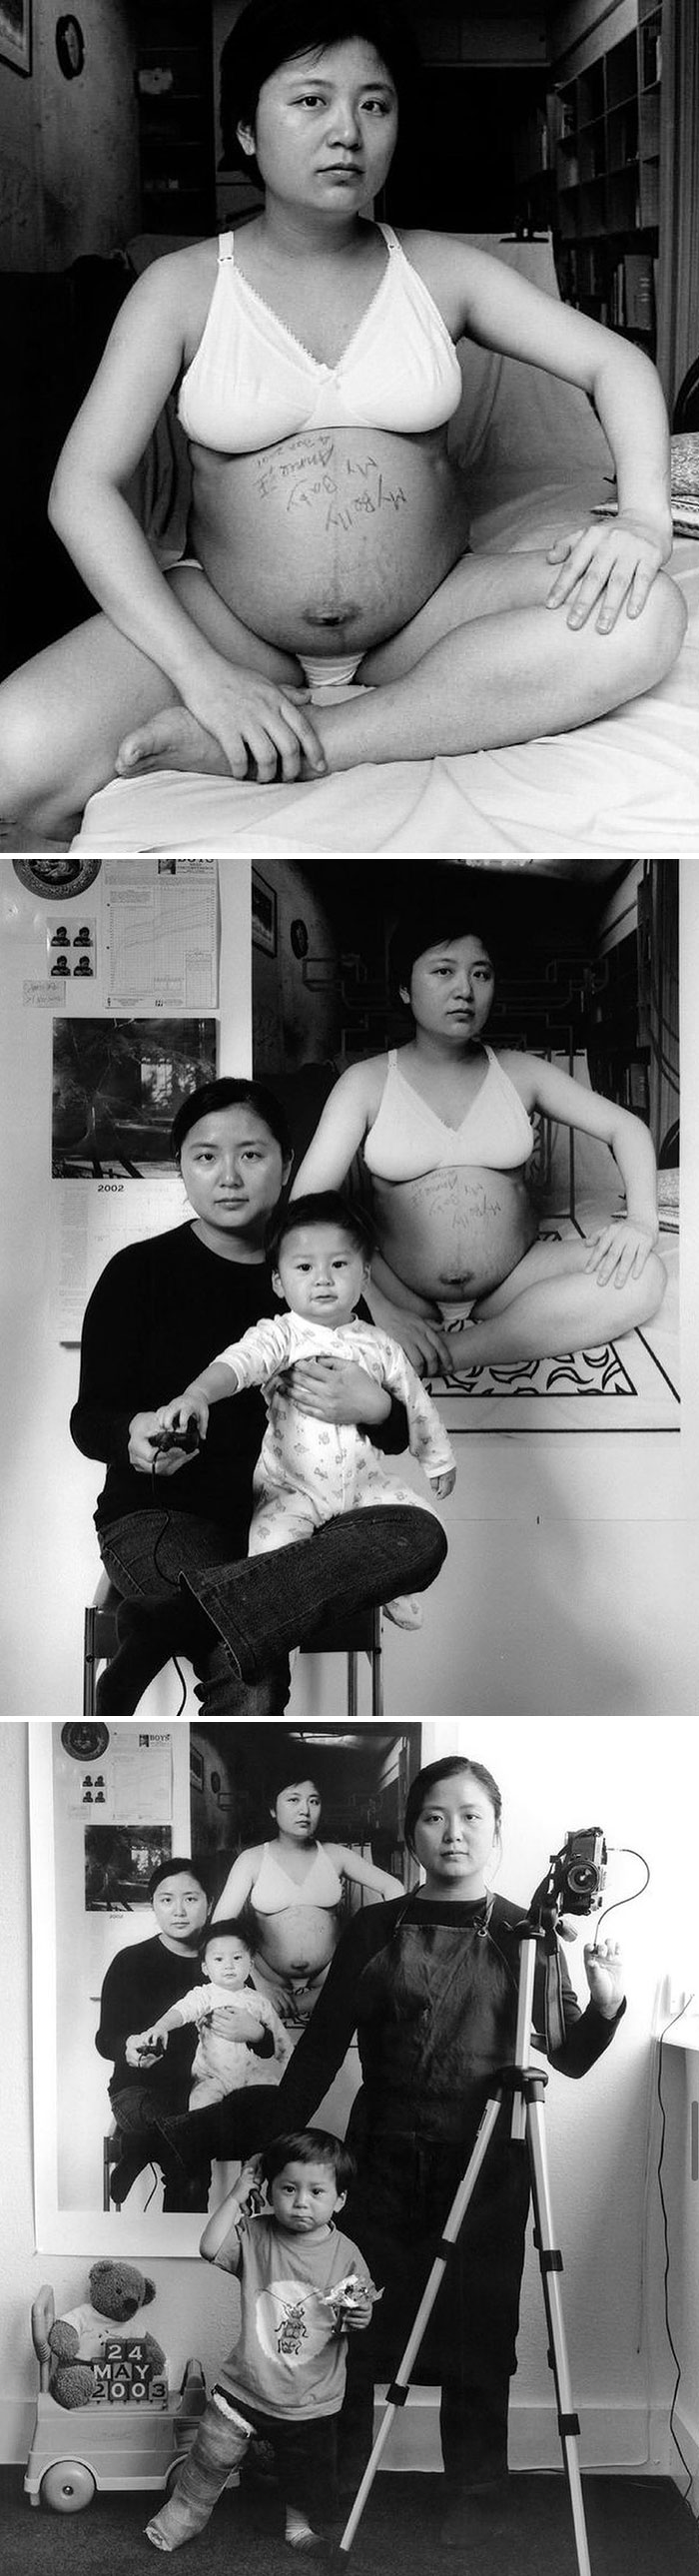 La madre como creadora por Annie Wang, que inició un proyecto de 17 años antes de que naciera su hijo, documentando el crecimiento de su hijo, Taiwán, 2001.